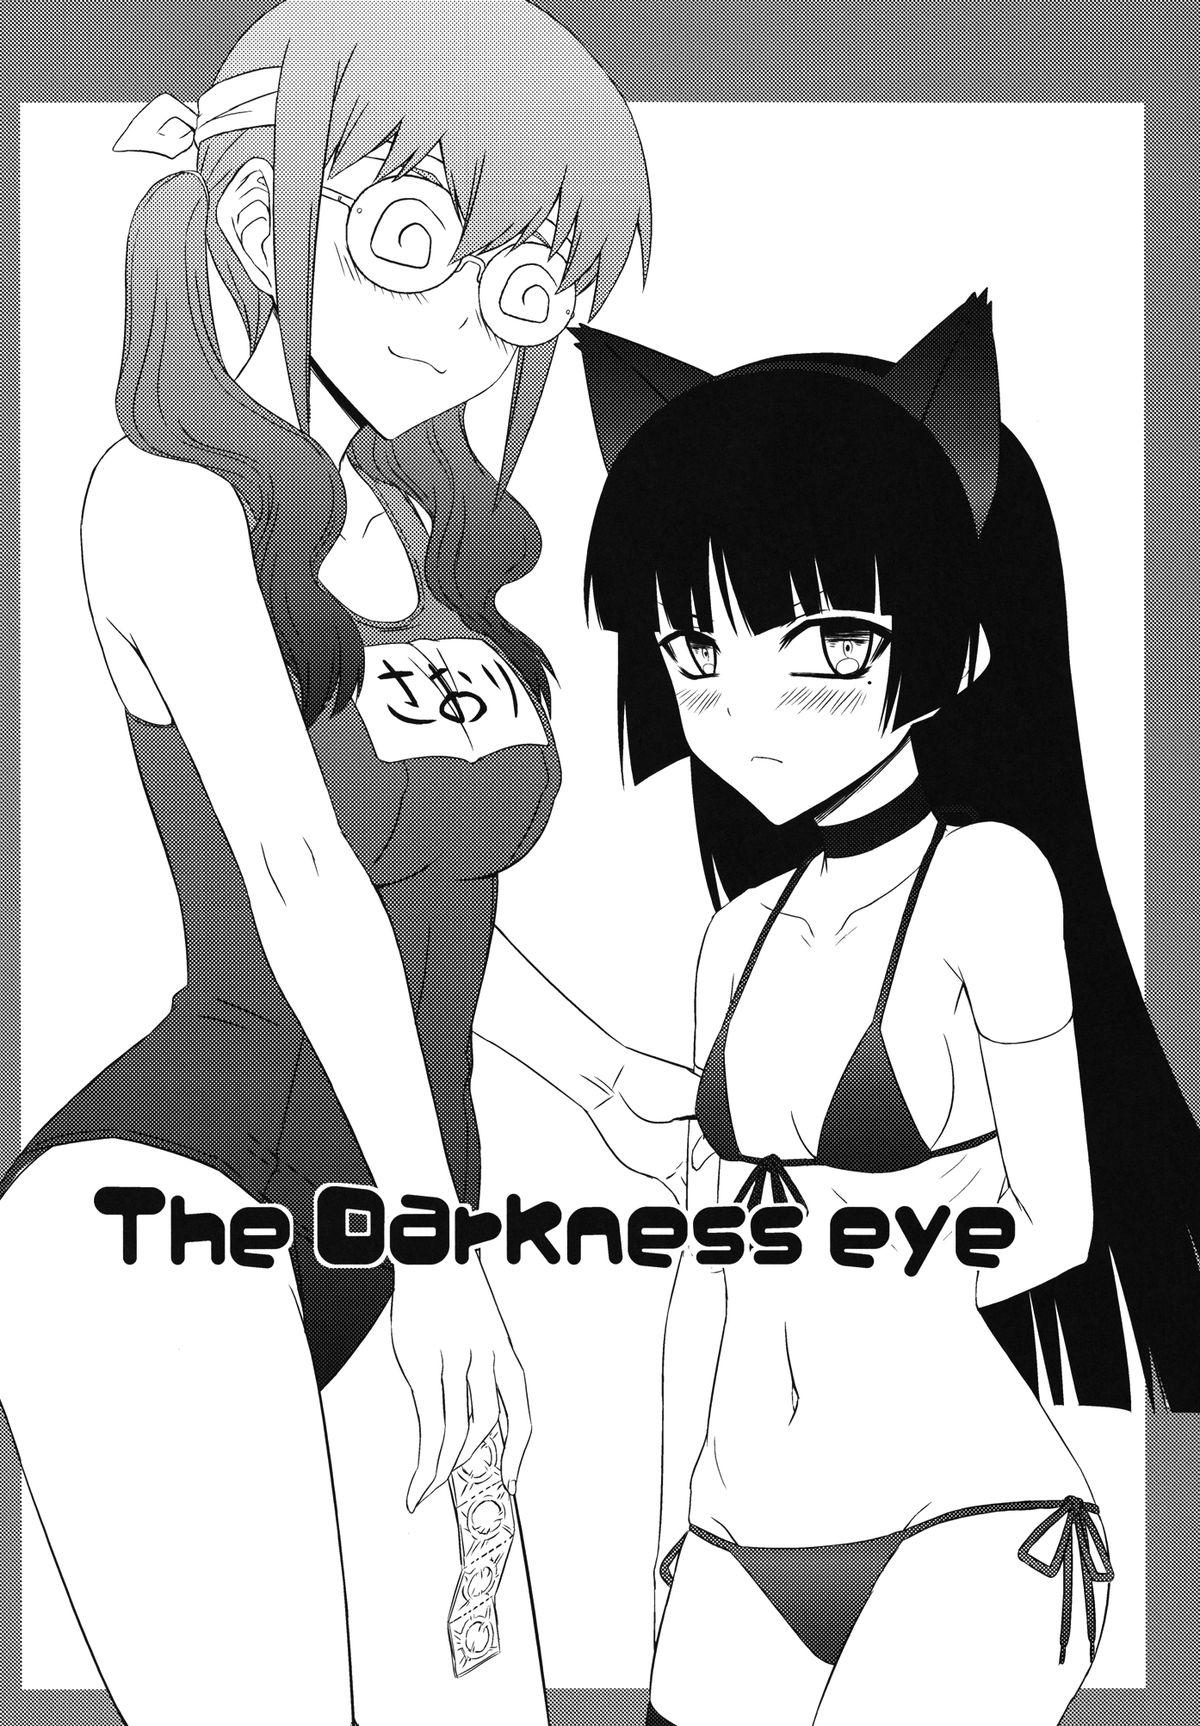 The Darkness eye 3